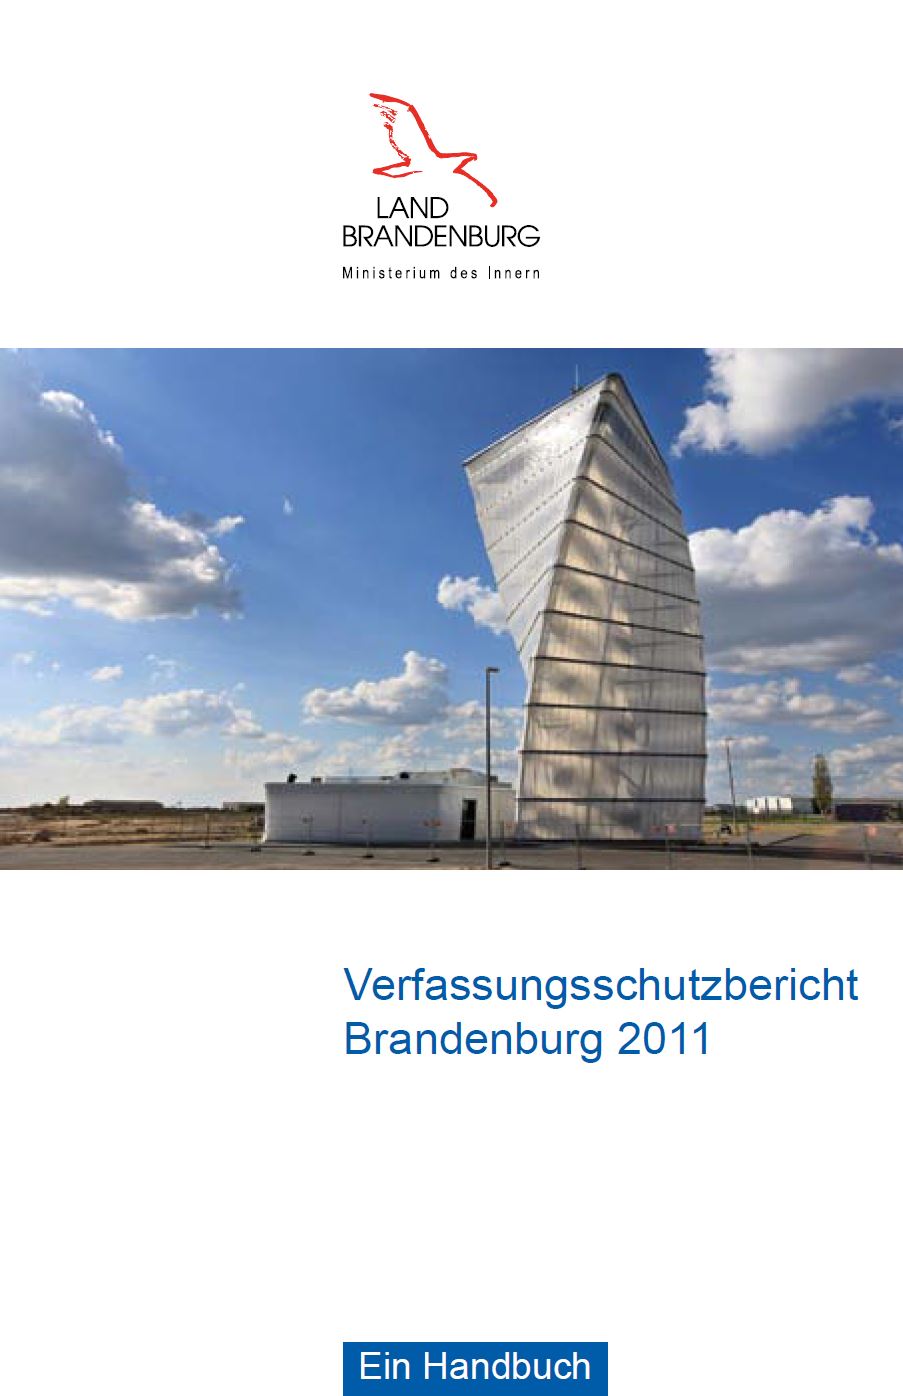 Bild vergrößern (Bild: Verfassungsschutzbericht 2011)